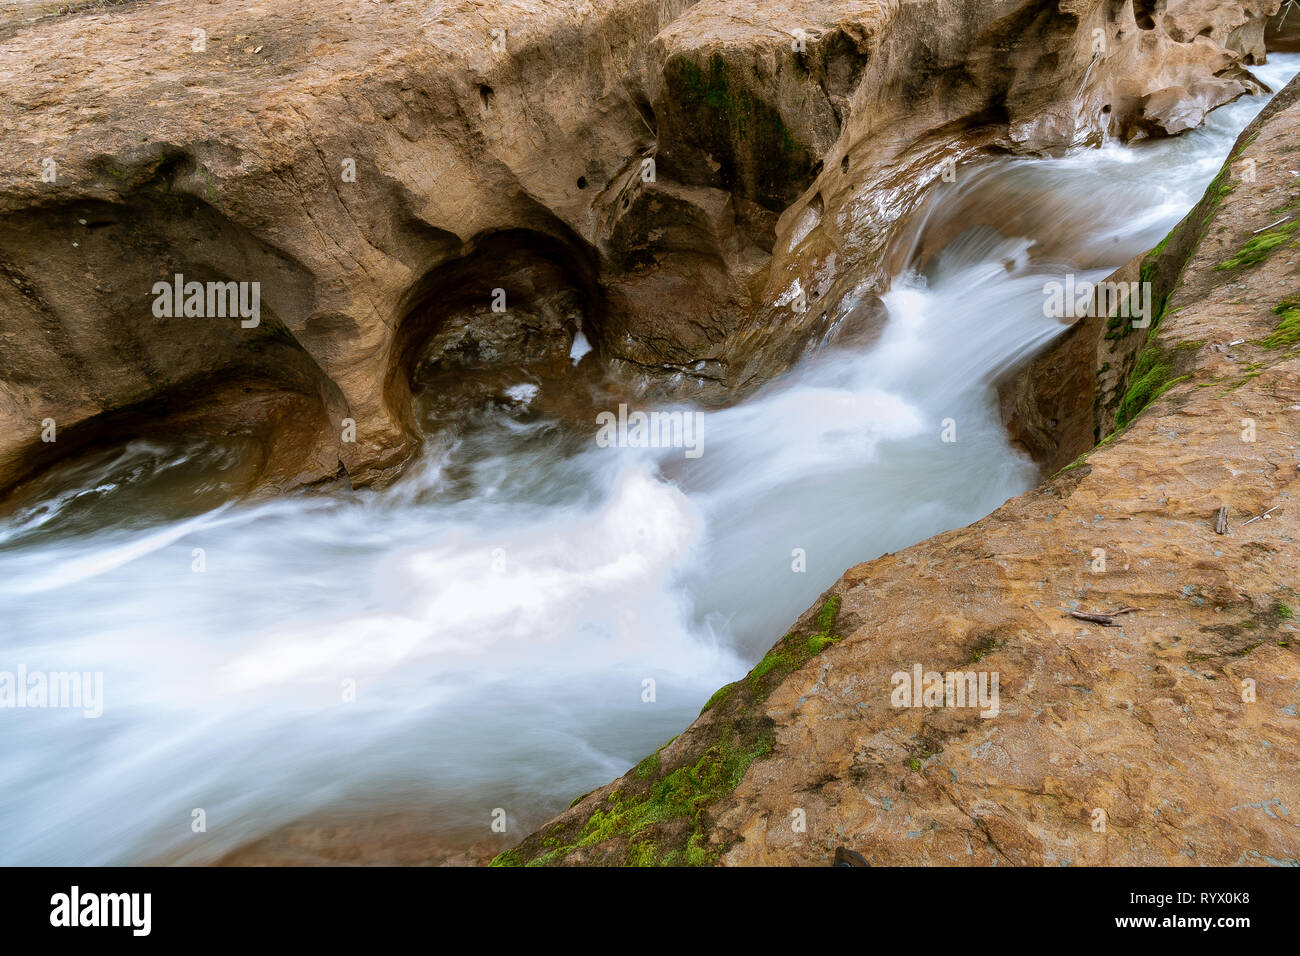 L'eau s'écoule dans une petite fente de grès canyon dans le sud de la Californie. La grande abondance d'eau après les récentes averses printanières de pluie. Banque D'Images